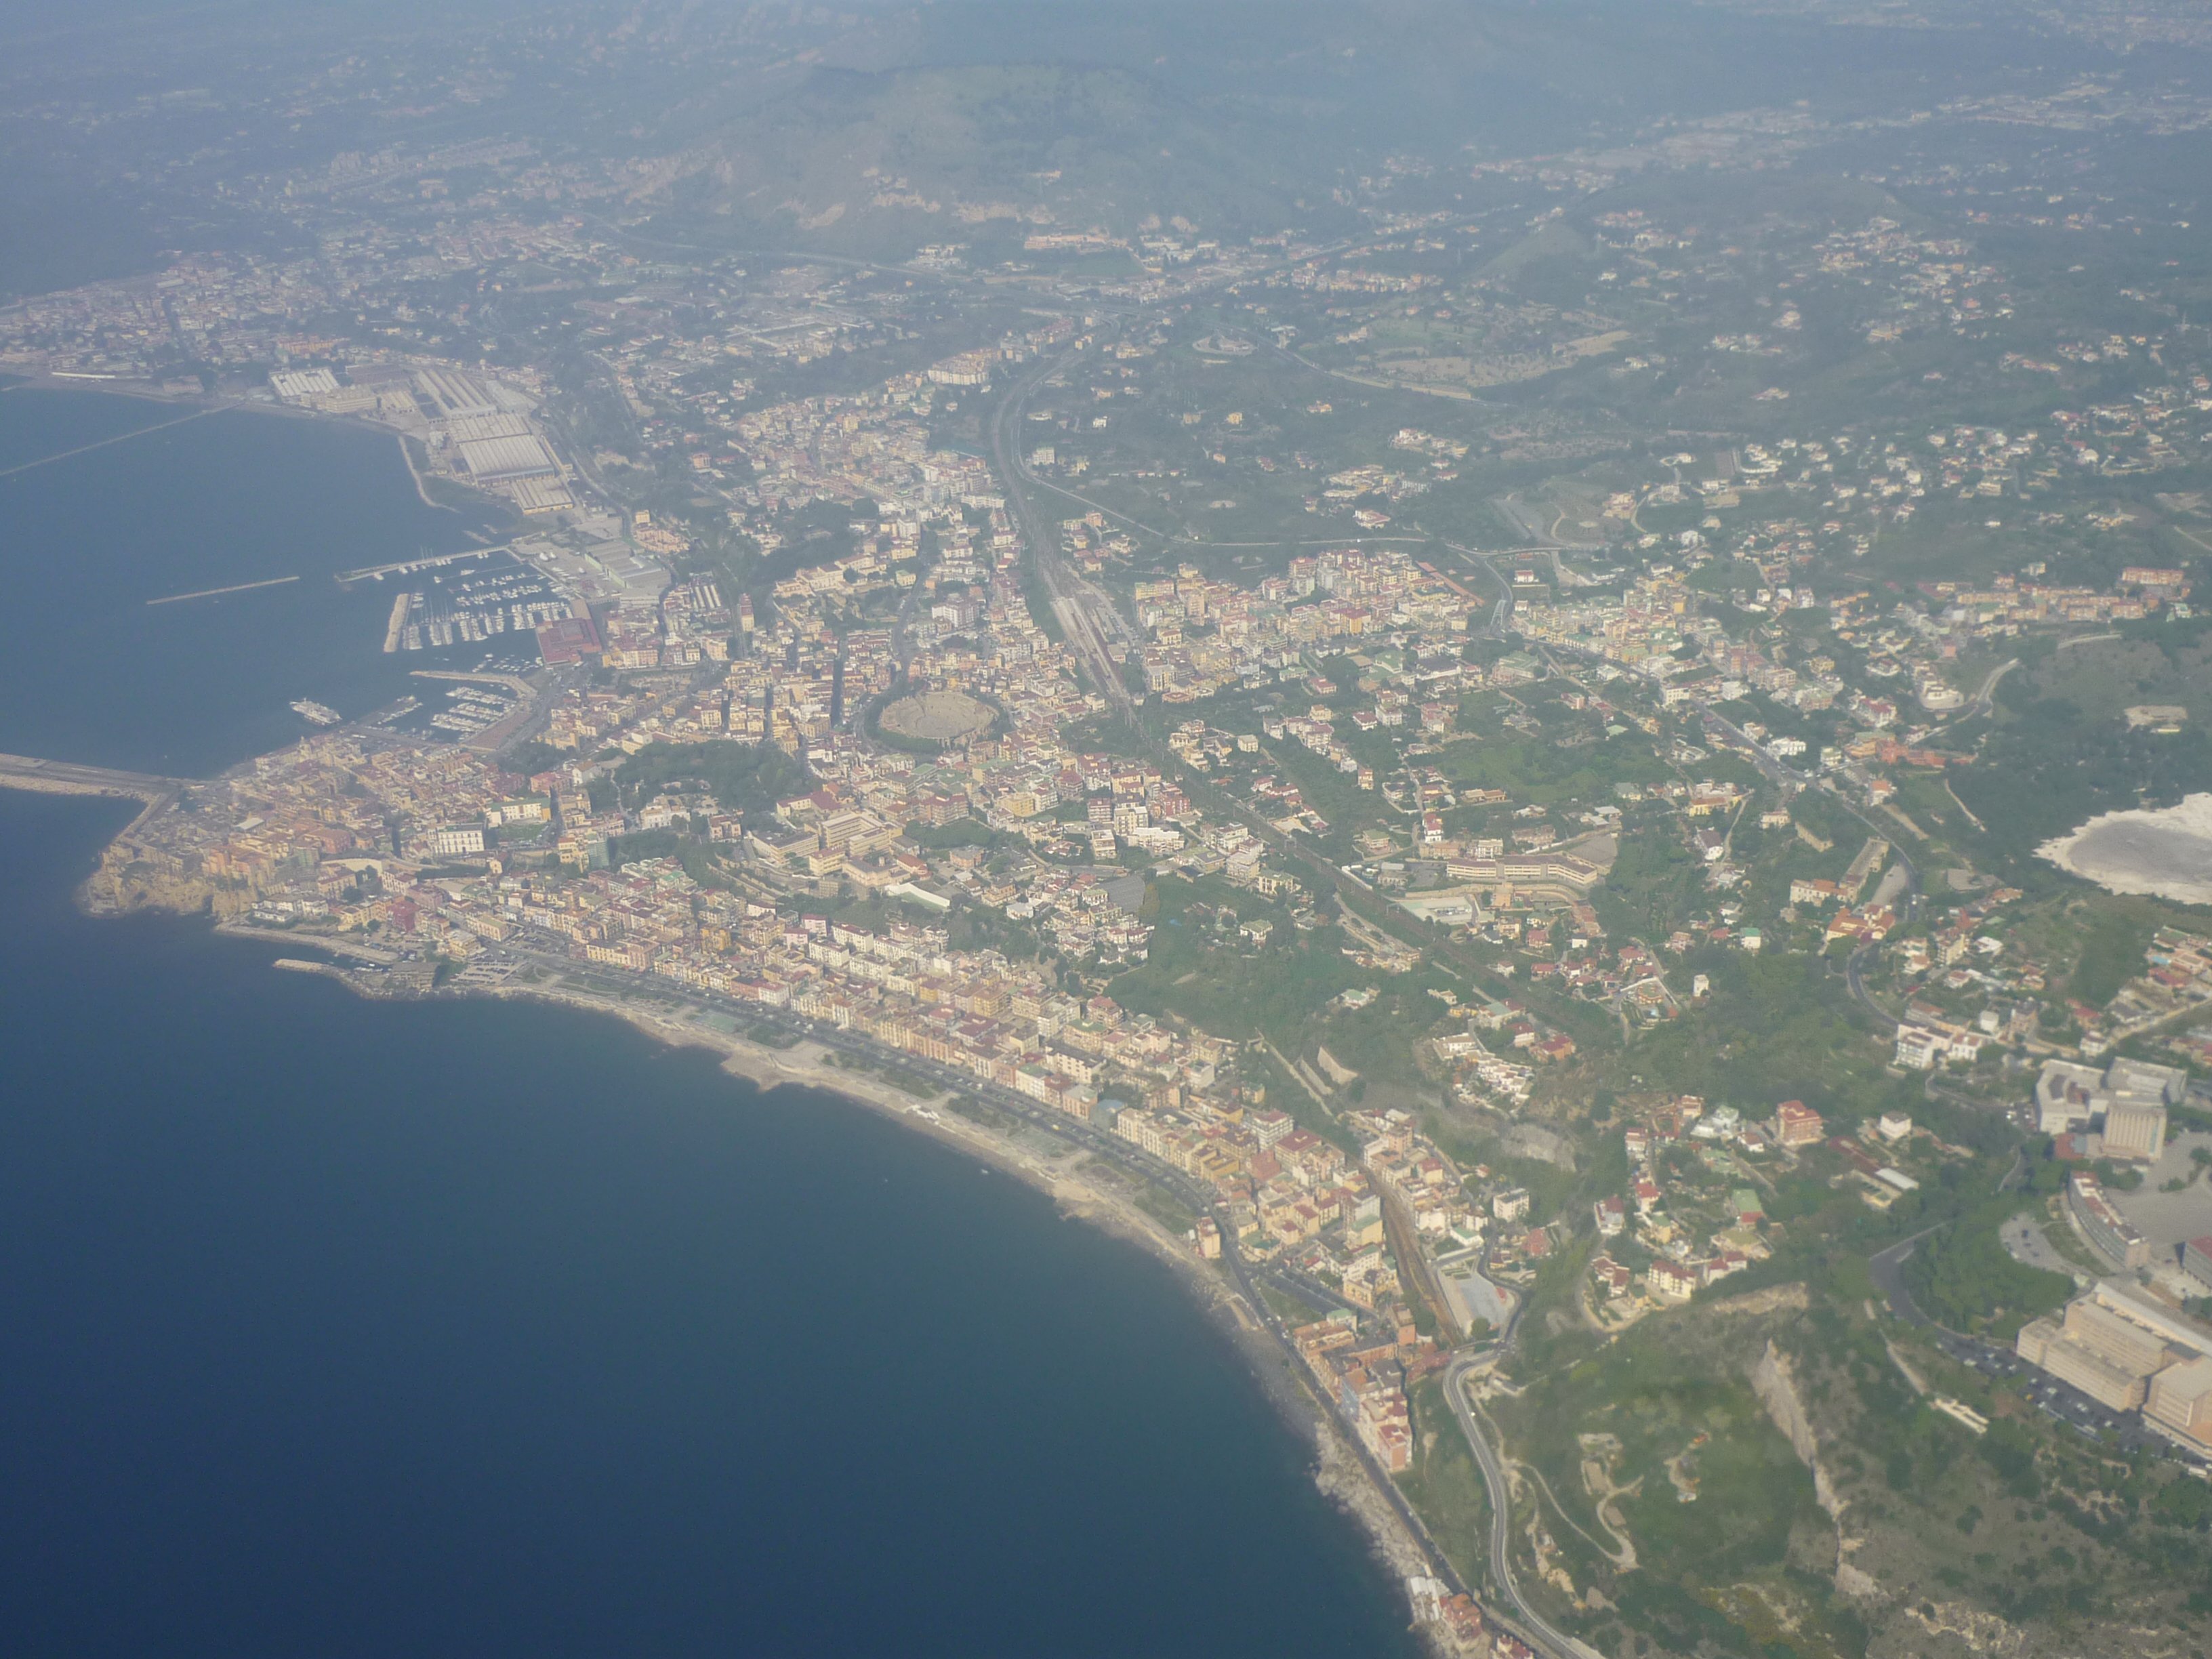 Landeanflug auf Neapel